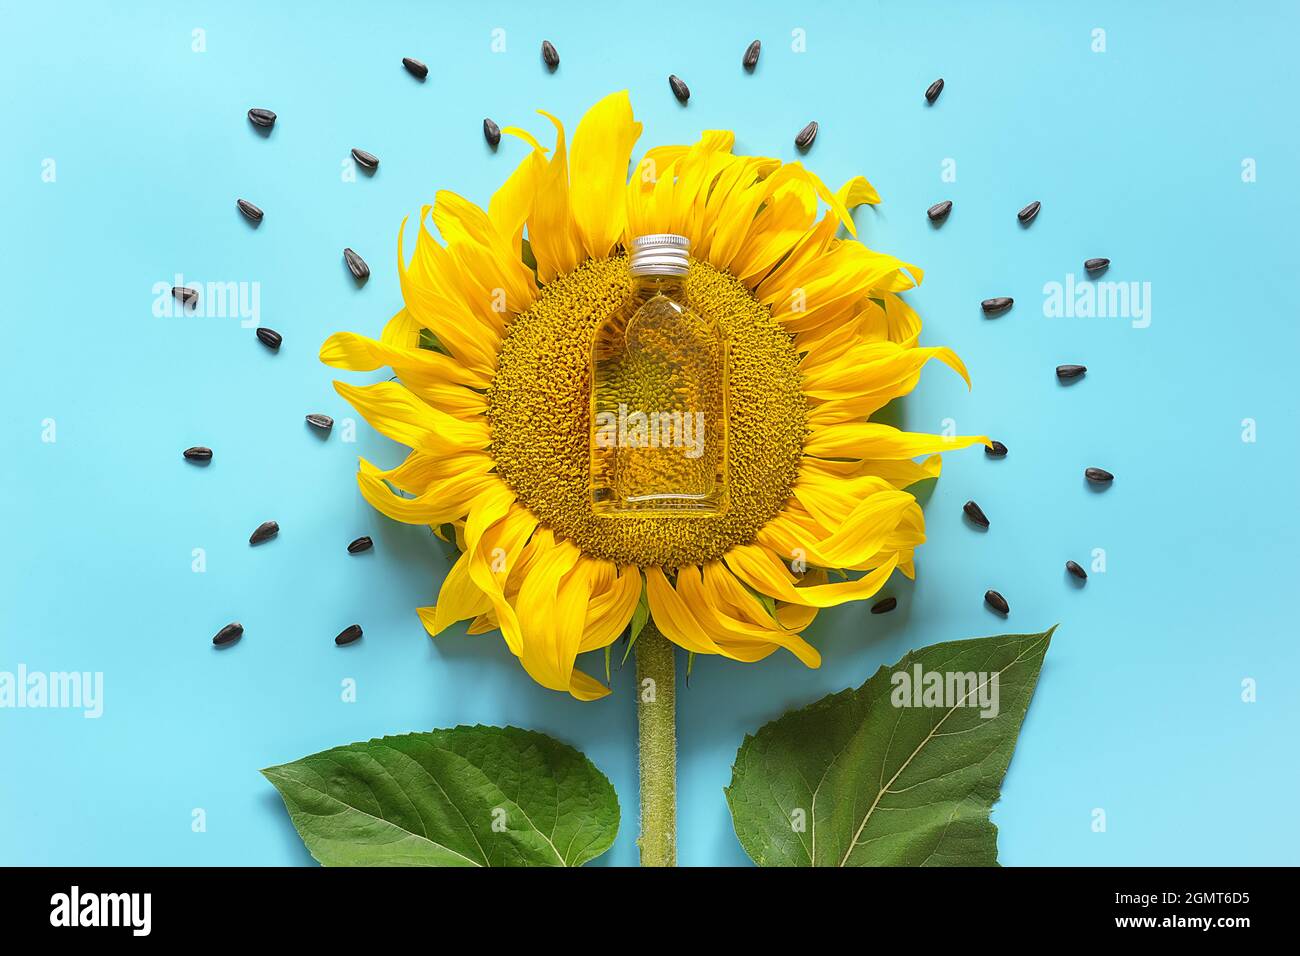 Flasche natürliches Sonnenblumenöl, Samen und frische gelbe Sonnenblume auf blauem Hintergrund. Kreatives Konzept Bio-Pflanzenölproduktion, Erntezeit. Stockfoto